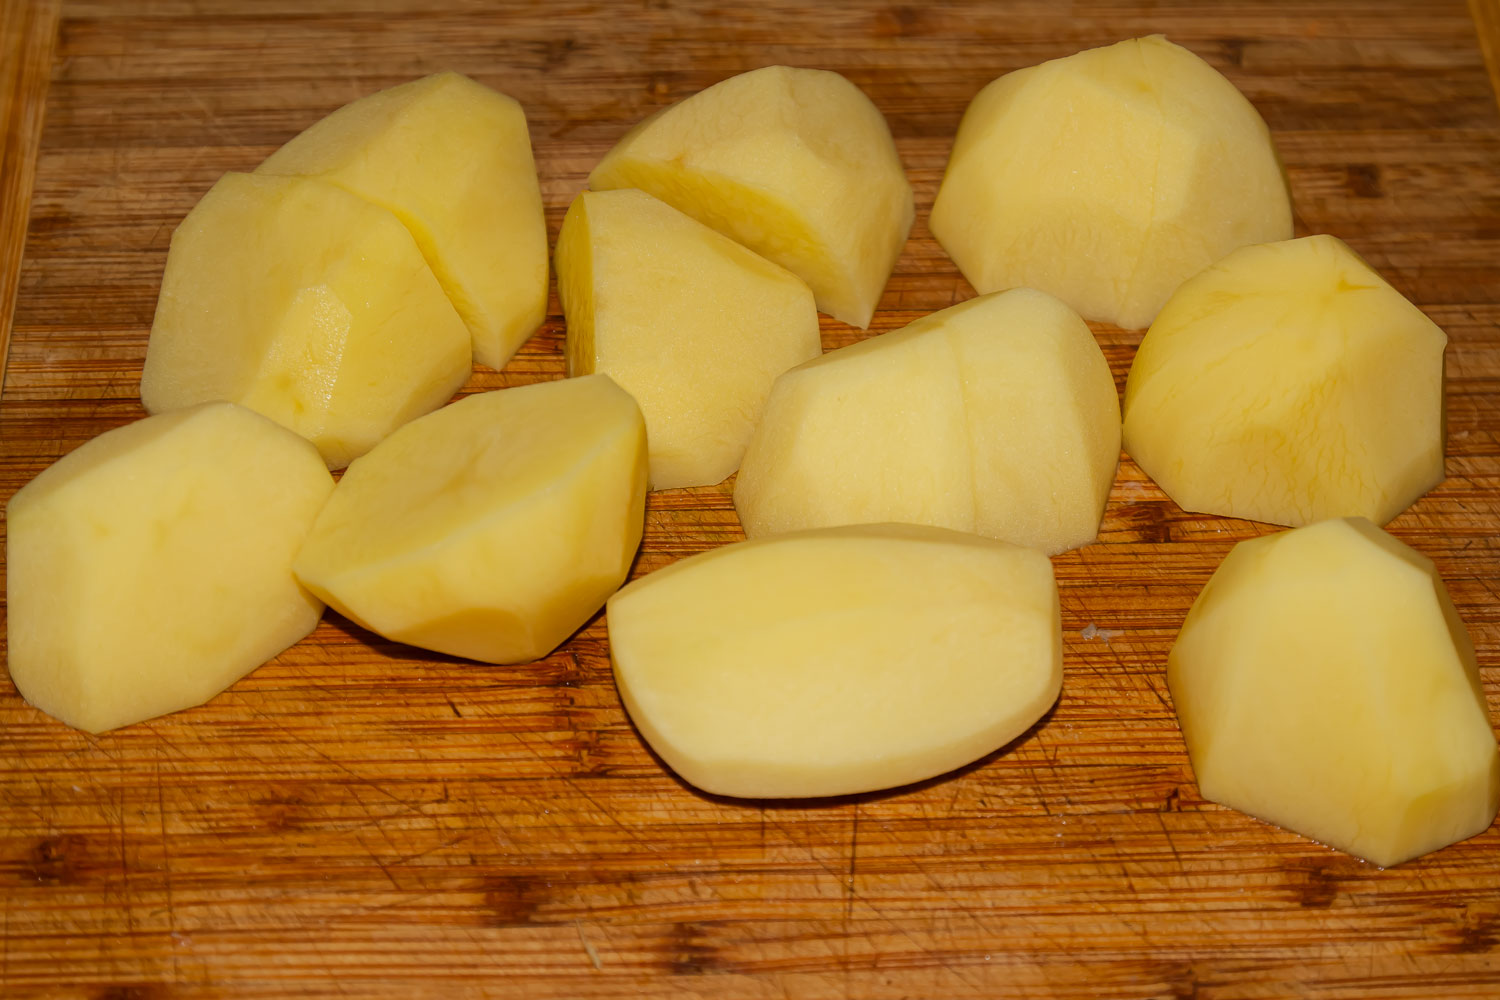 нарезанная картошка по рецепту Говядина с картофелем в афганском казане 